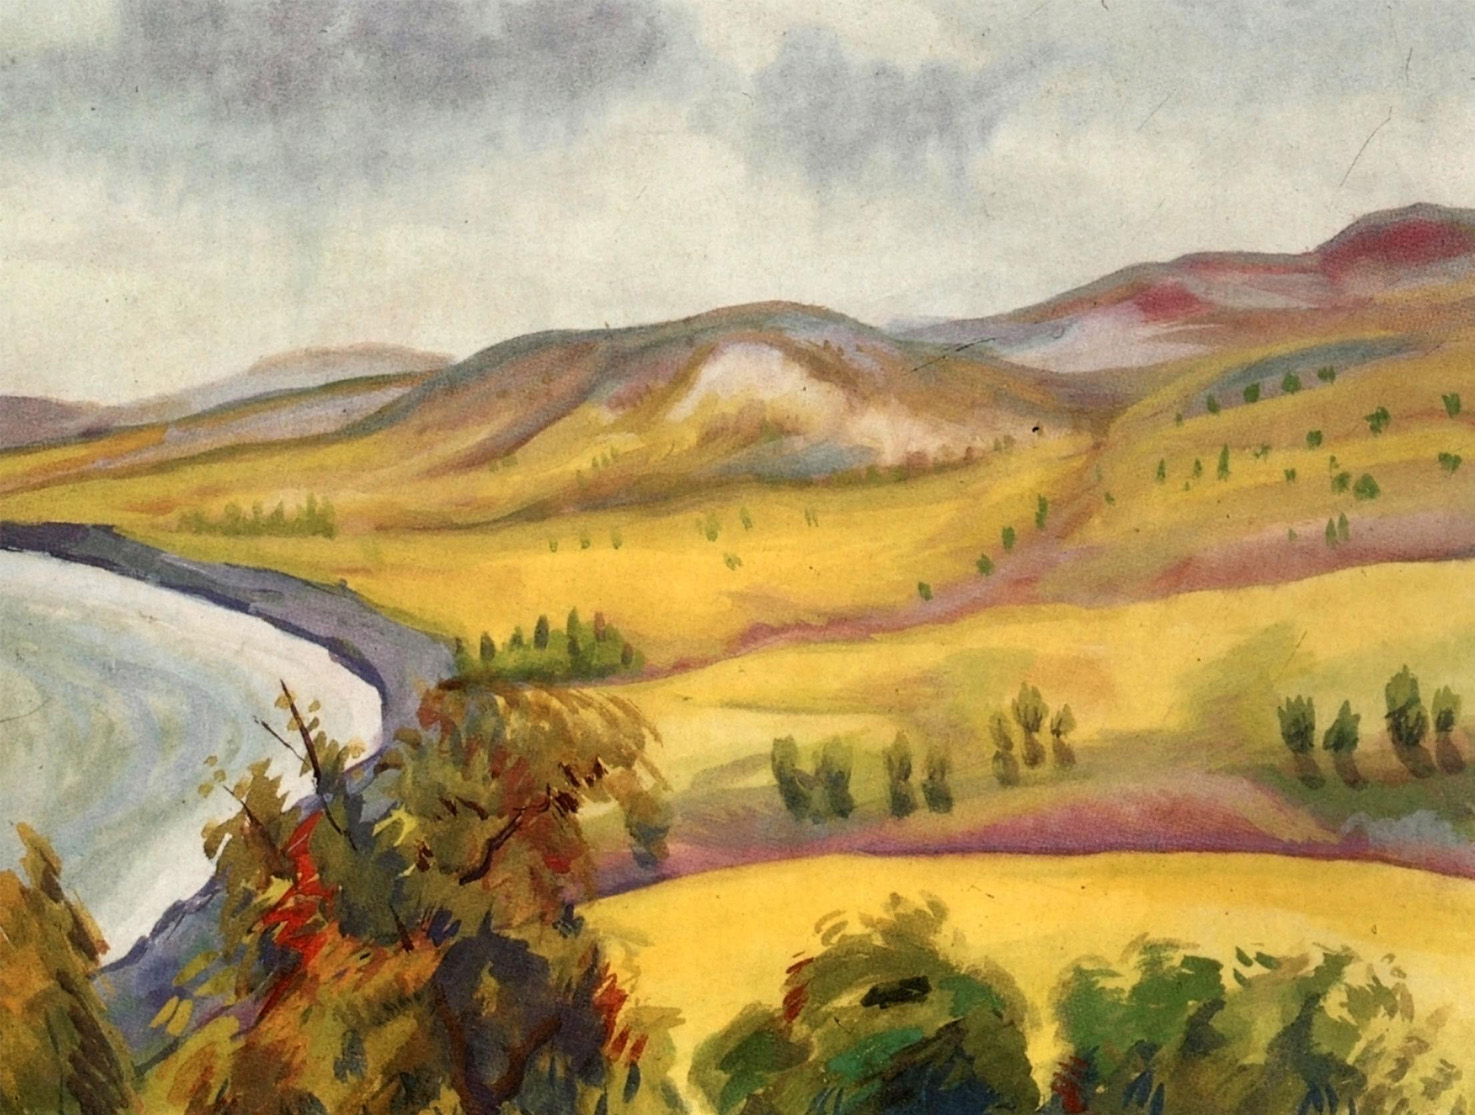 З.Е. Серебрякова "Крымский пейзаж", 1910-е